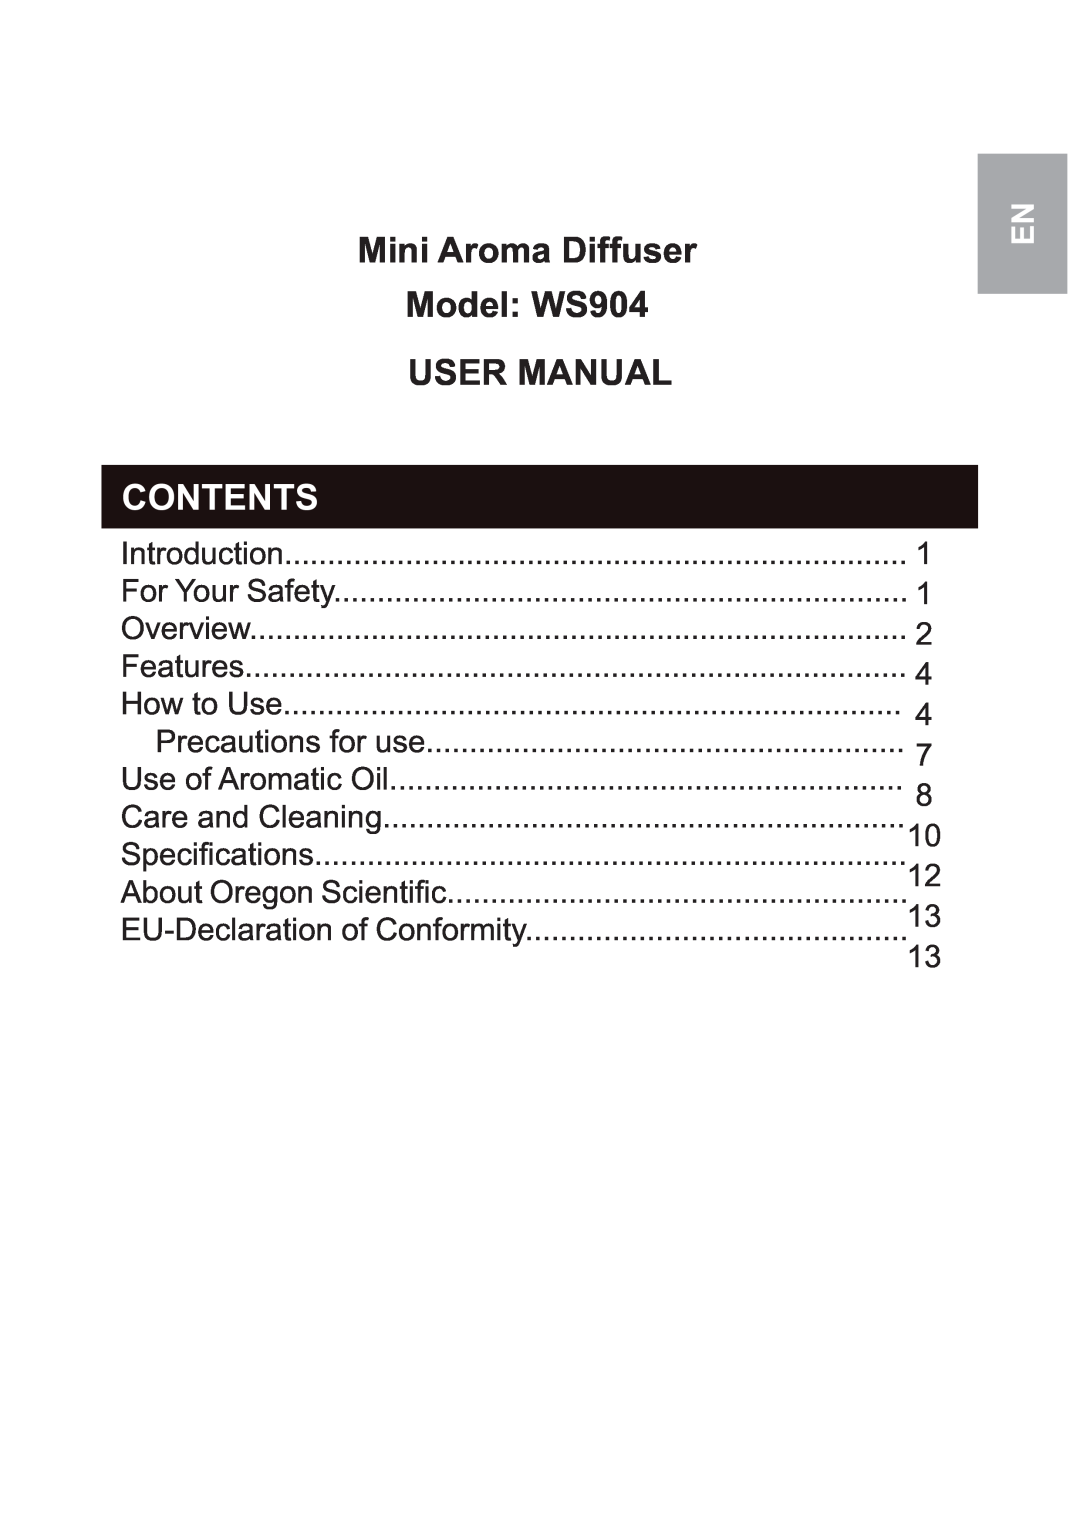 Oregon Scientific user manual Mini Aroma Diffuser Model: WS904 USER MANUAL, Contents 